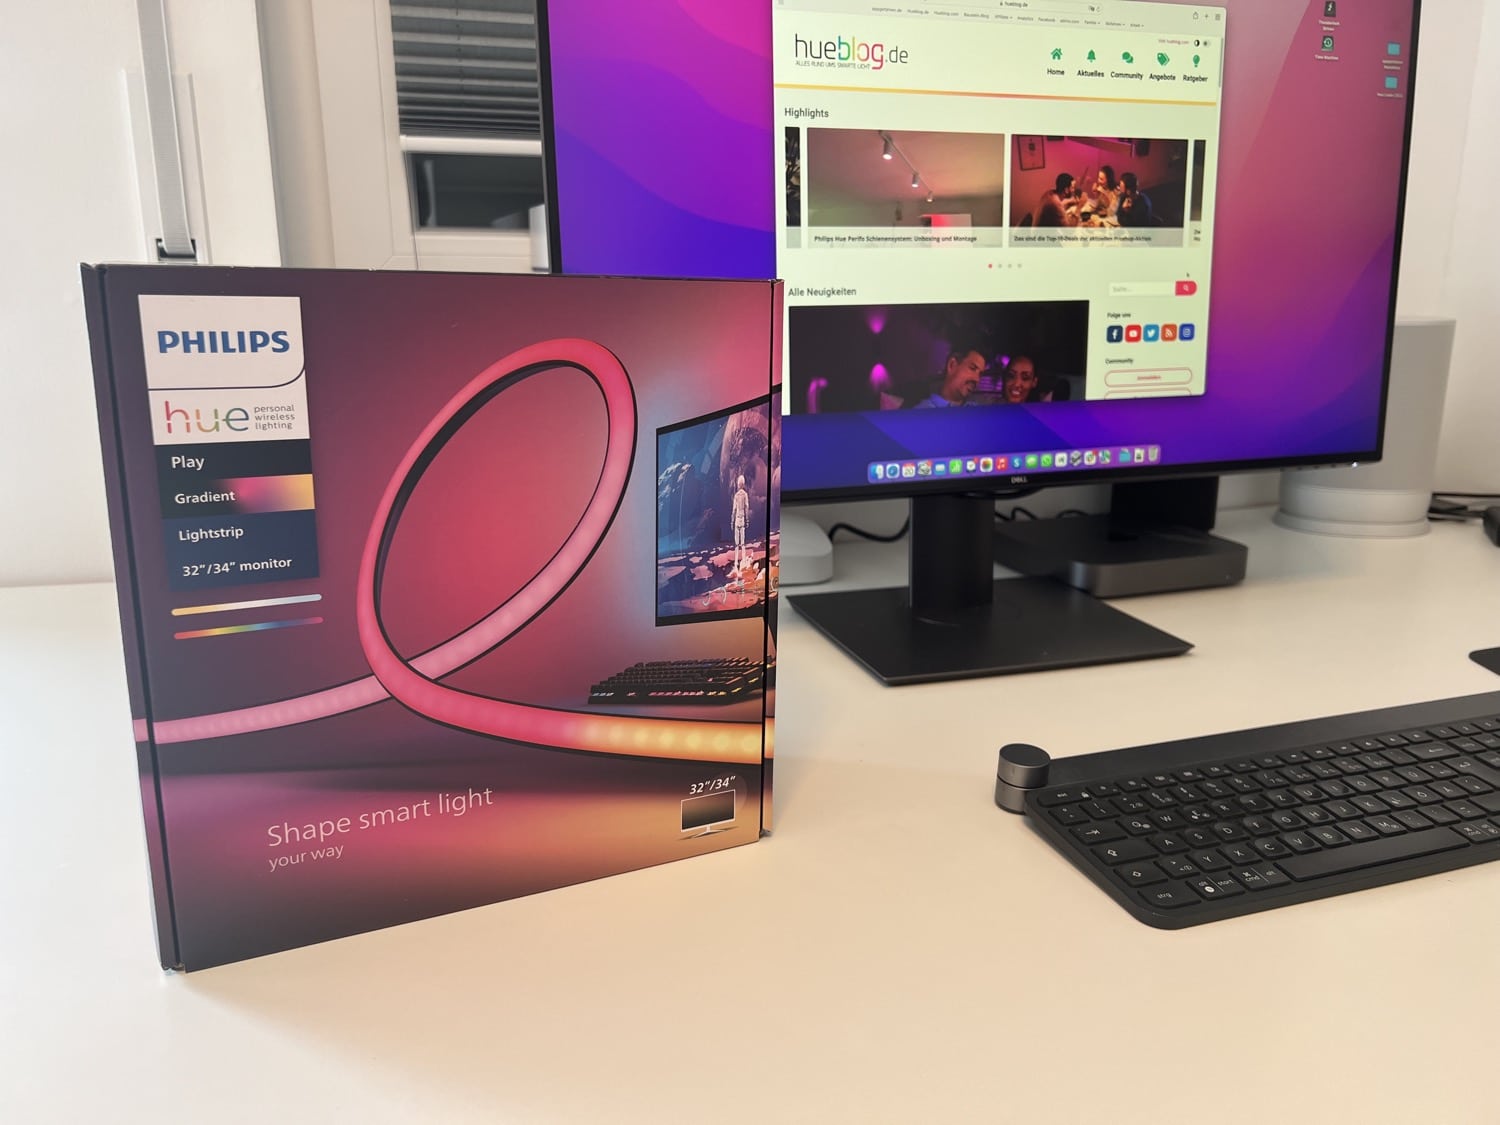 Hueblog: Philips Hue Play Gradient Lightstrip für PC im Test